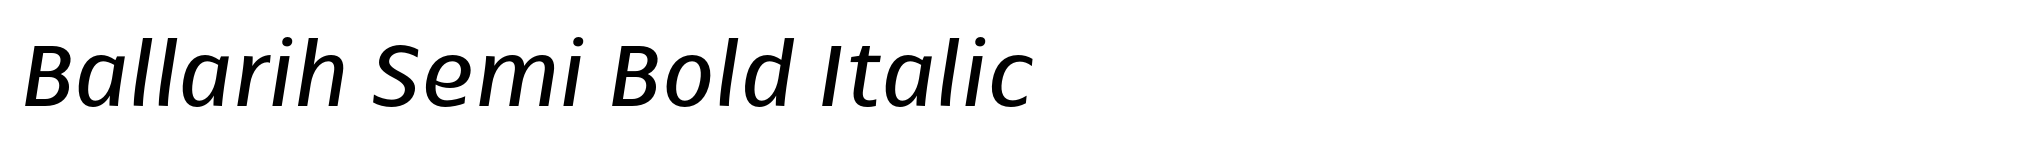 Ballarih Semi Bold Italic image